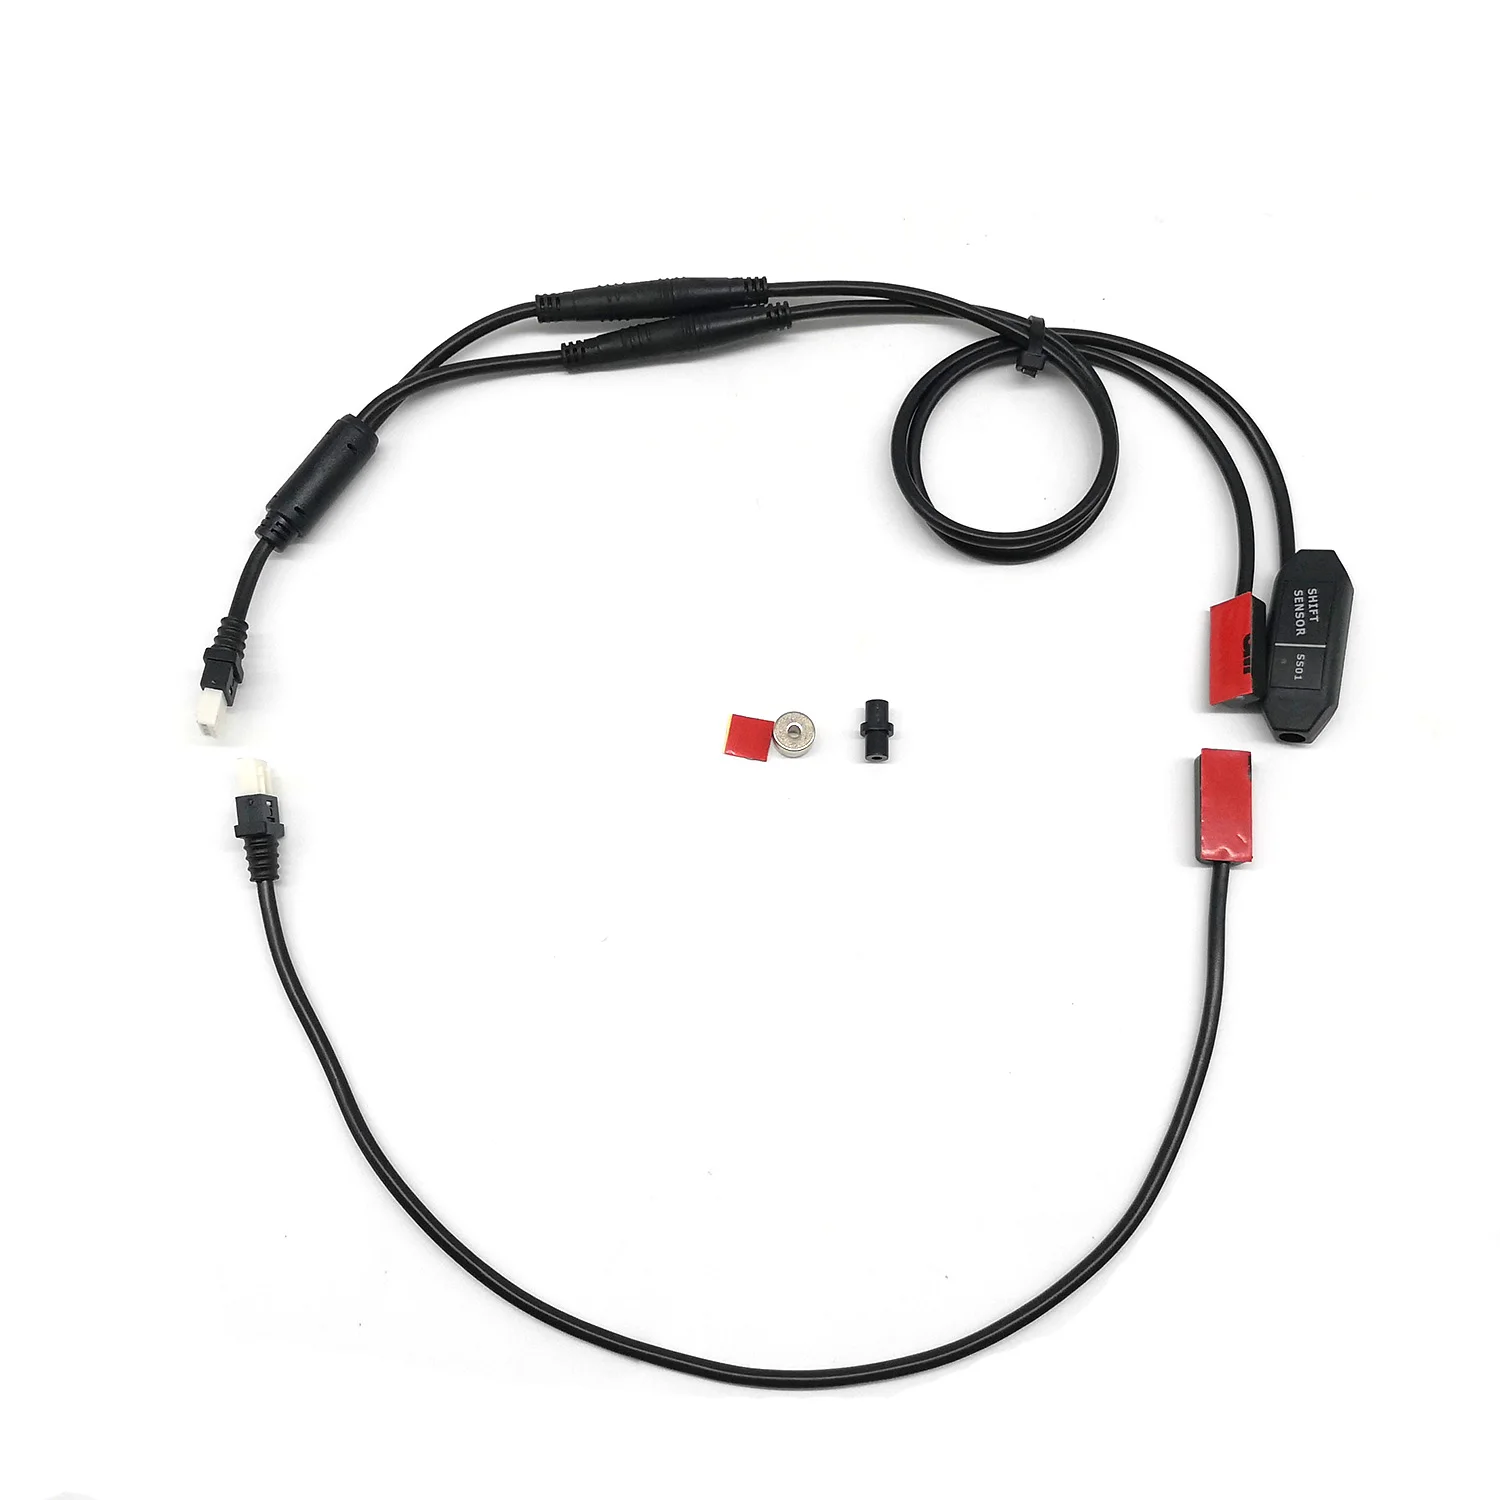 EJOYQI TSDZ 2 Середина привода двигателя датчик переключения передач Датчик тормоза Электрический велосипед Замена датчика Y-SPLITTER 1T2 - Цвет: Gear Sensor Set